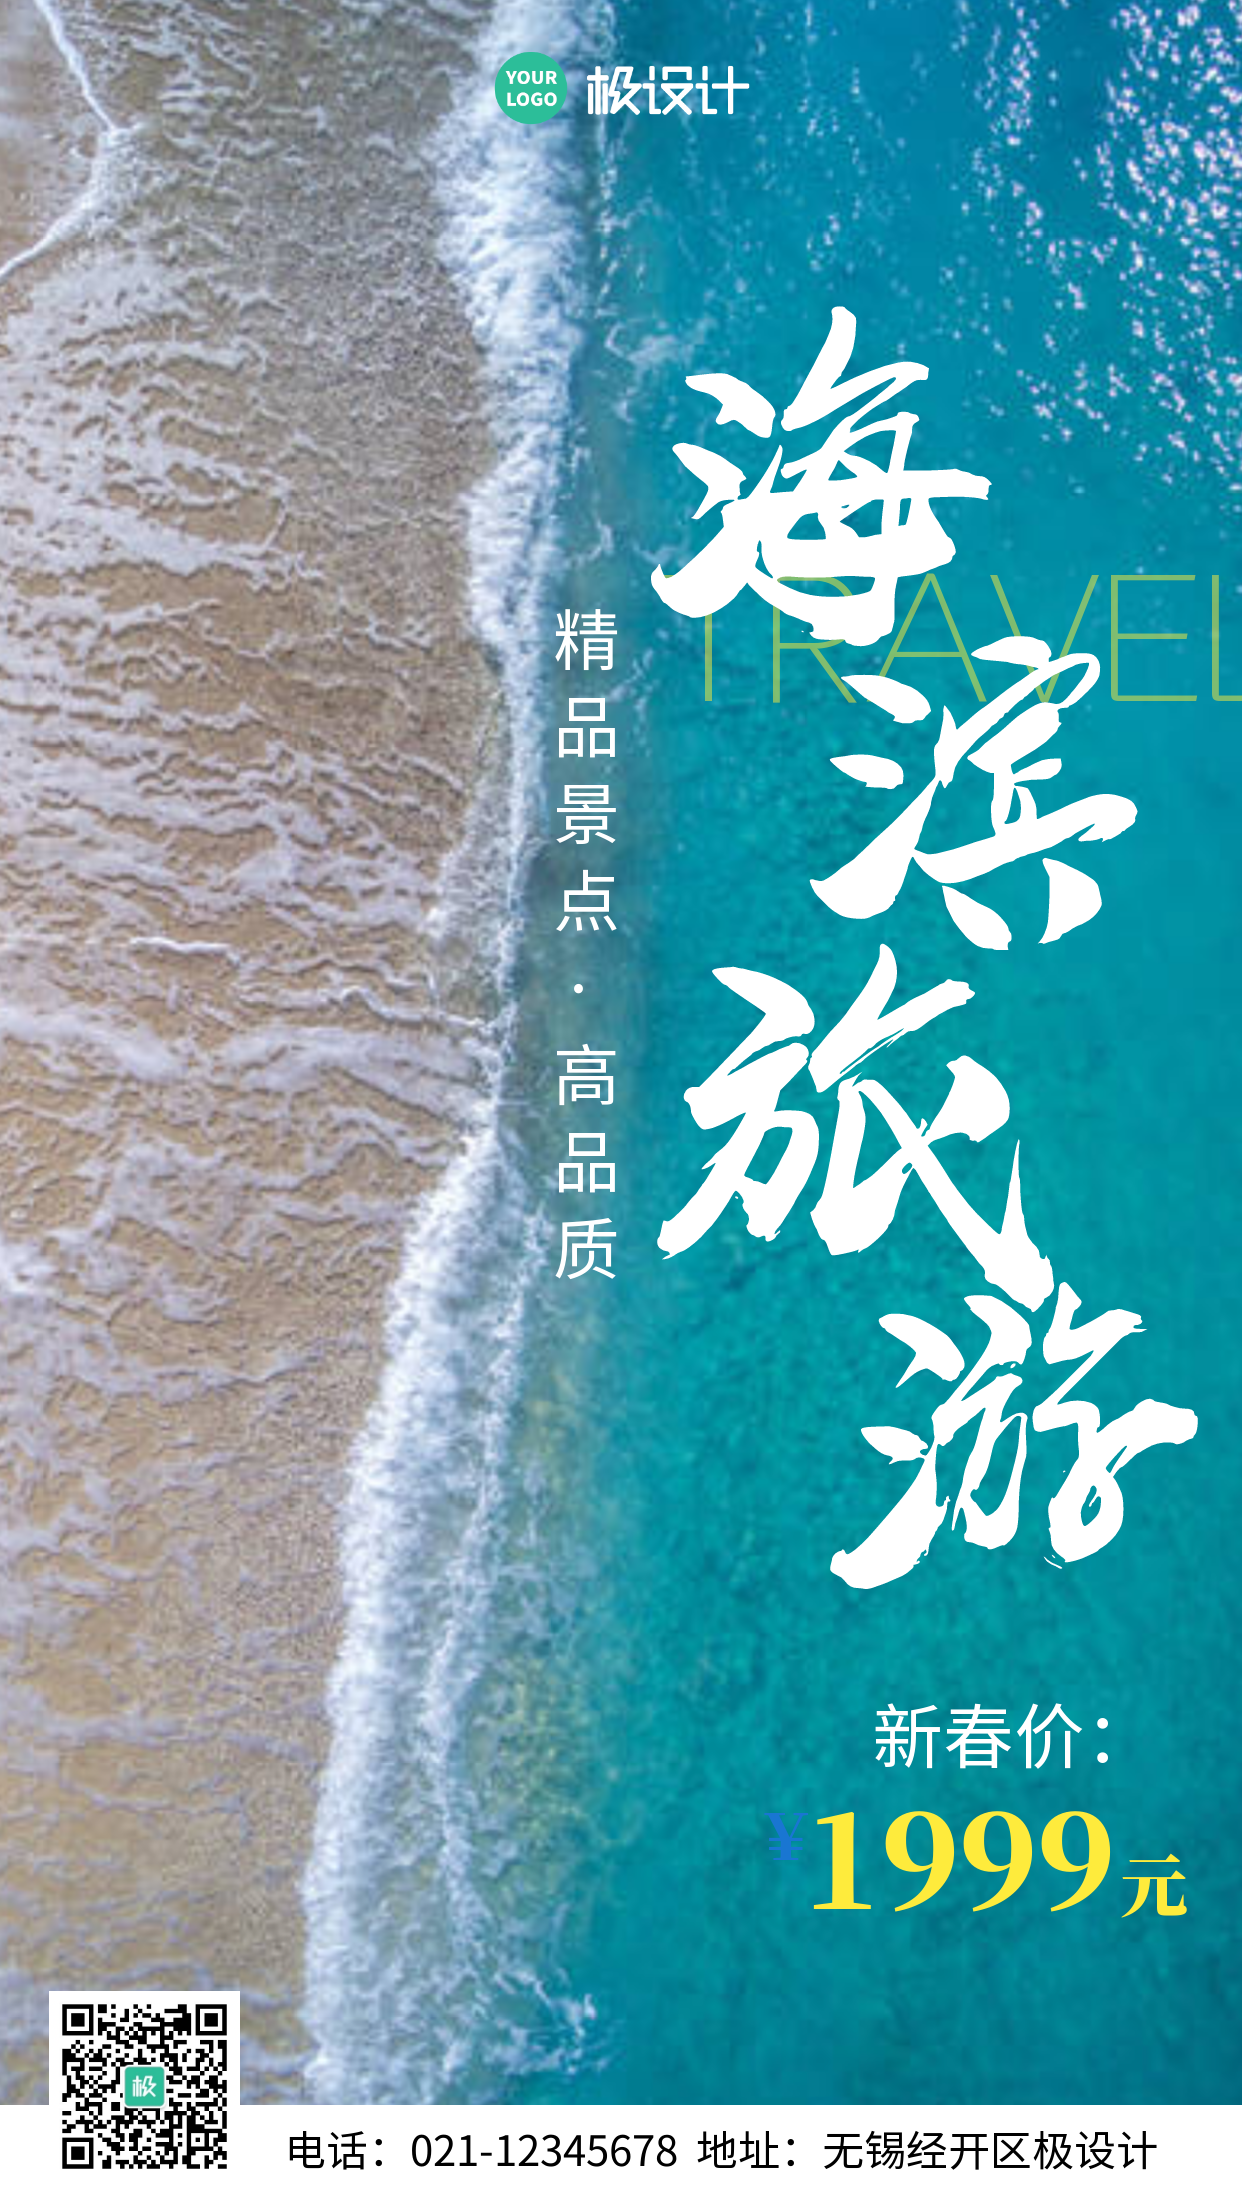 简约风摄影图海滨旅游手机营销海报